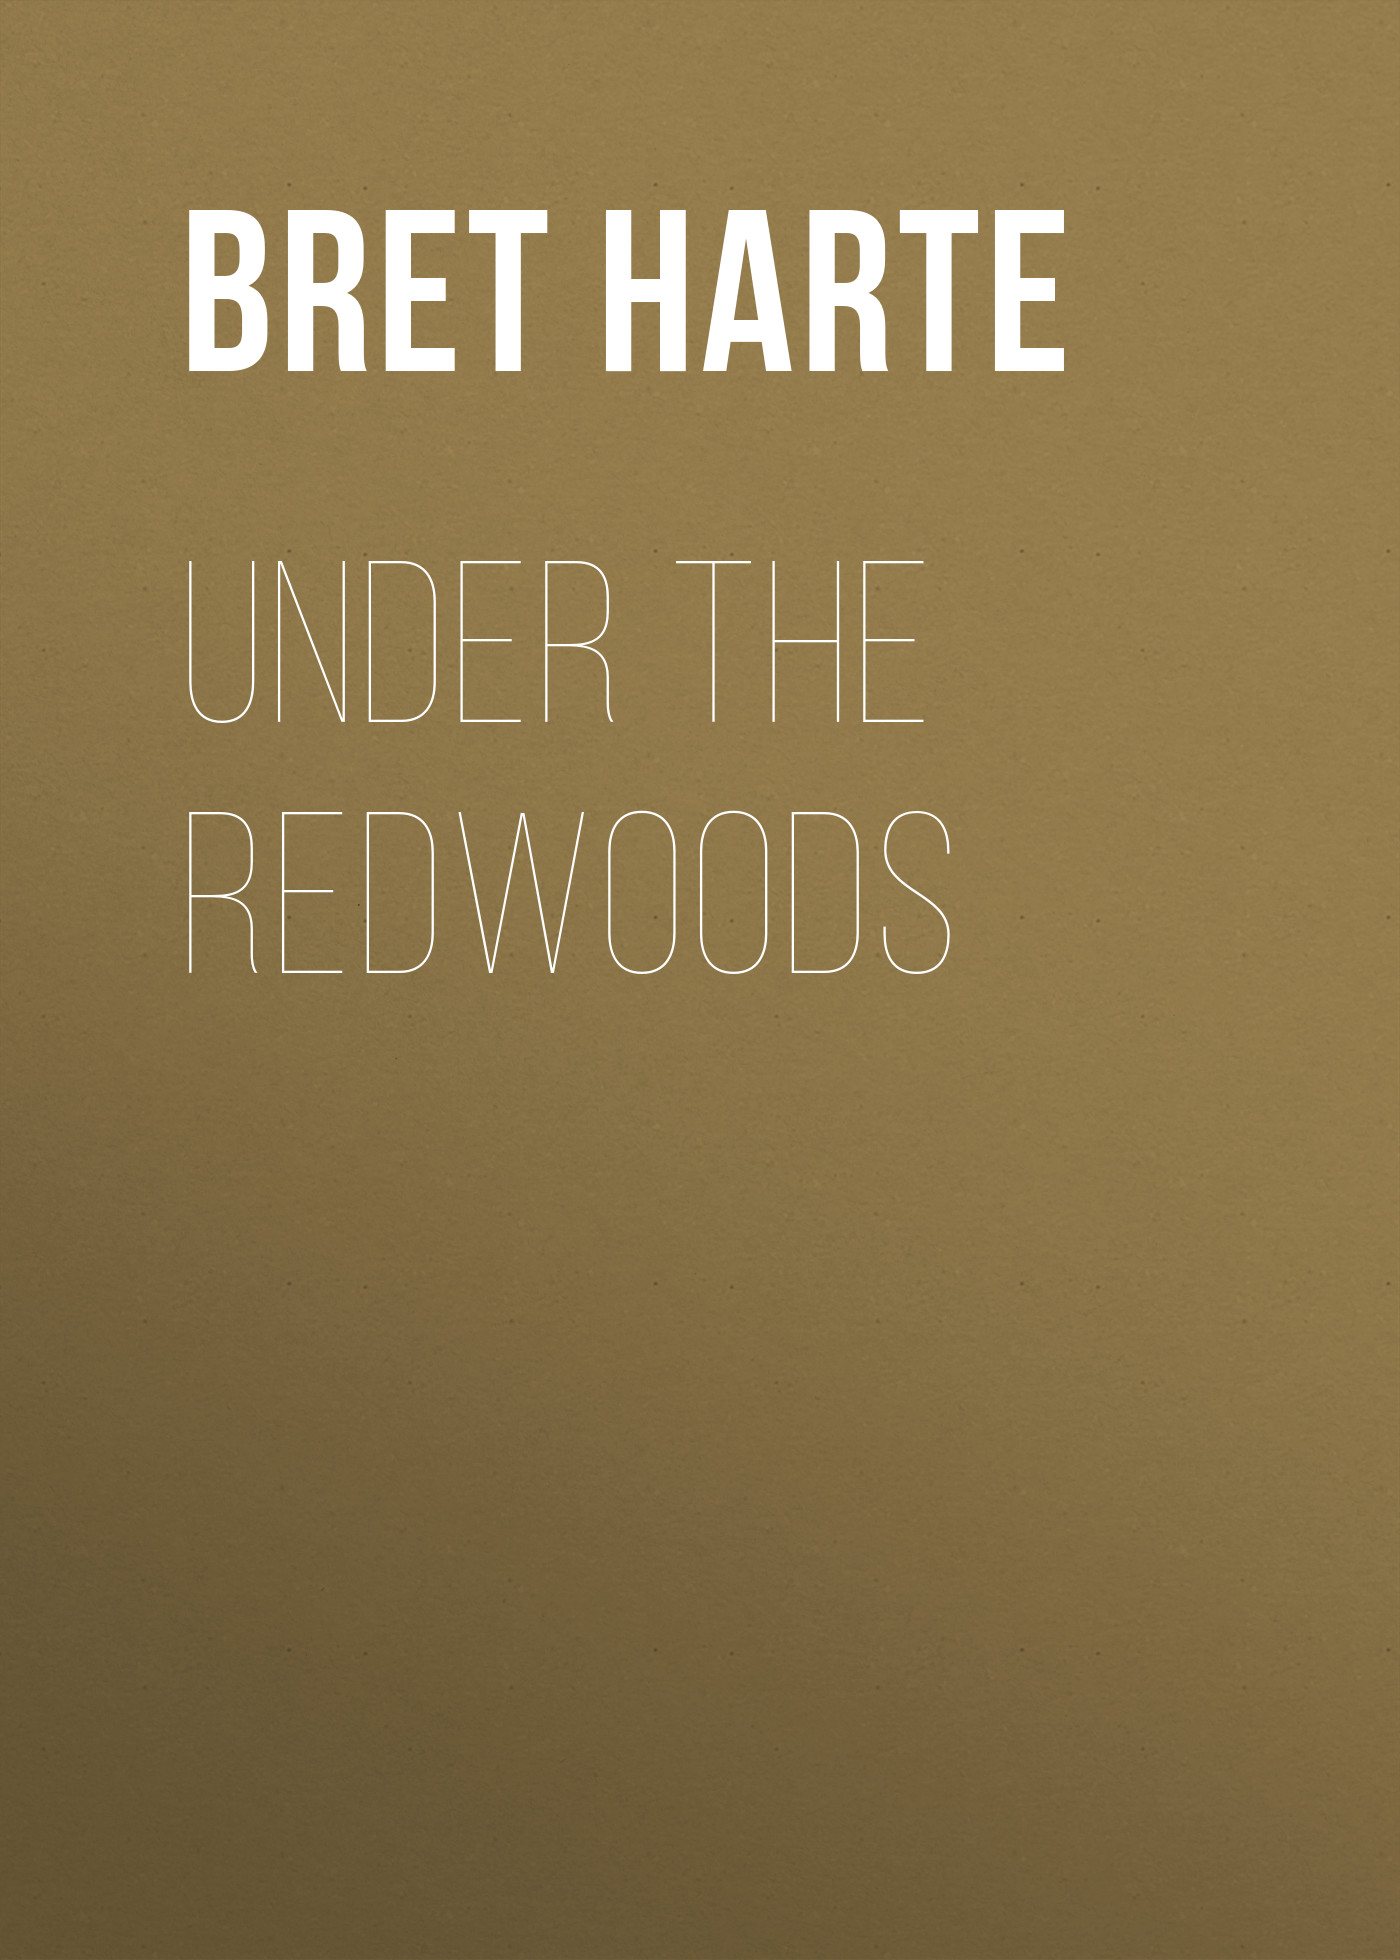 Книга Under the Redwoods из серии , созданная Bret Harte, может относится к жанру Зарубежная фантастика, Литература 19 века, Зарубежная старинная литература, Зарубежная классика. Стоимость электронной книги Under the Redwoods с идентификатором 36323484 составляет 0 руб.